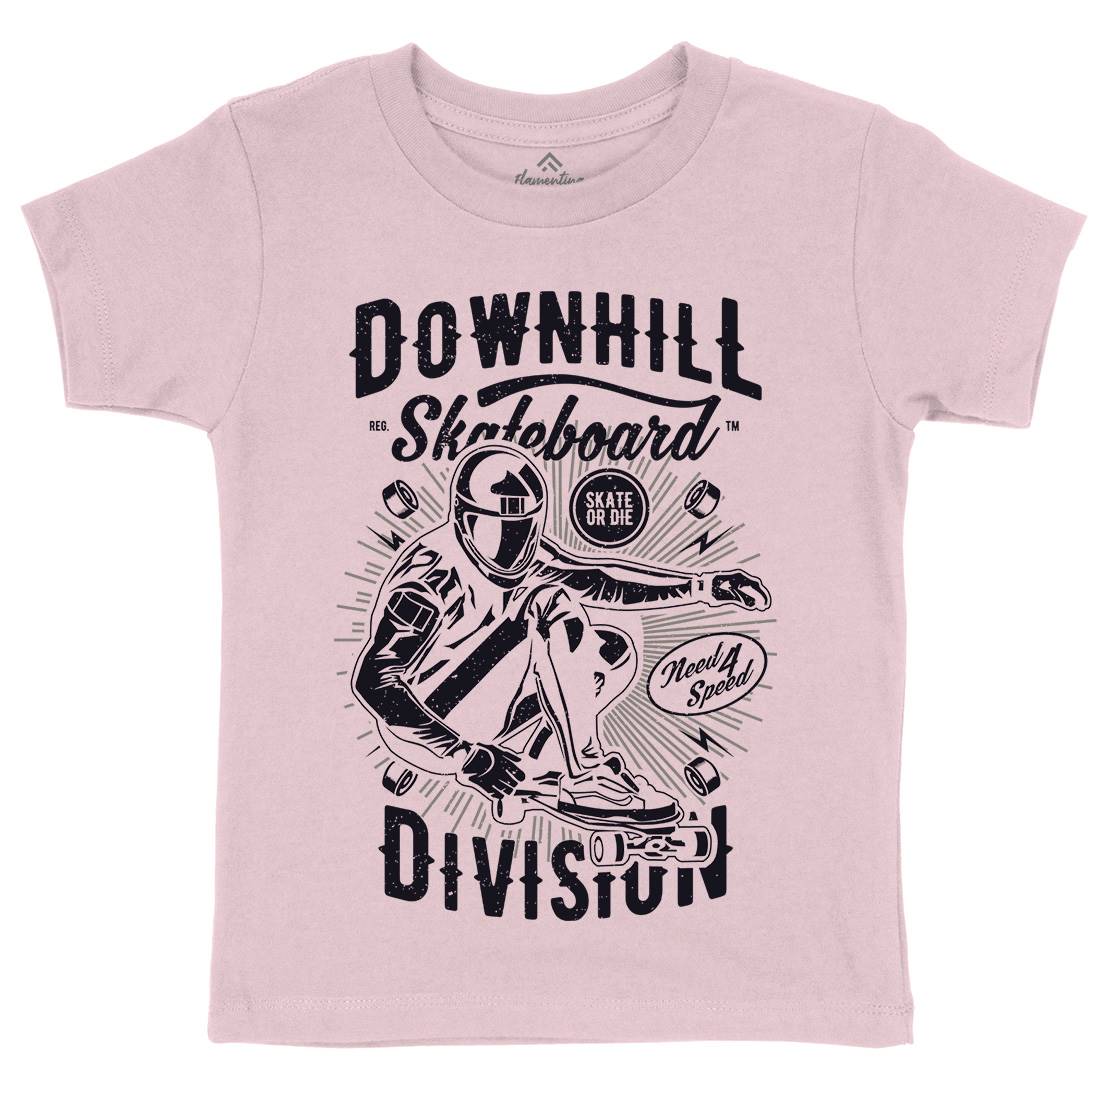 Downhill Skateboard Kids Crew Neck T-Shirt Skate A645